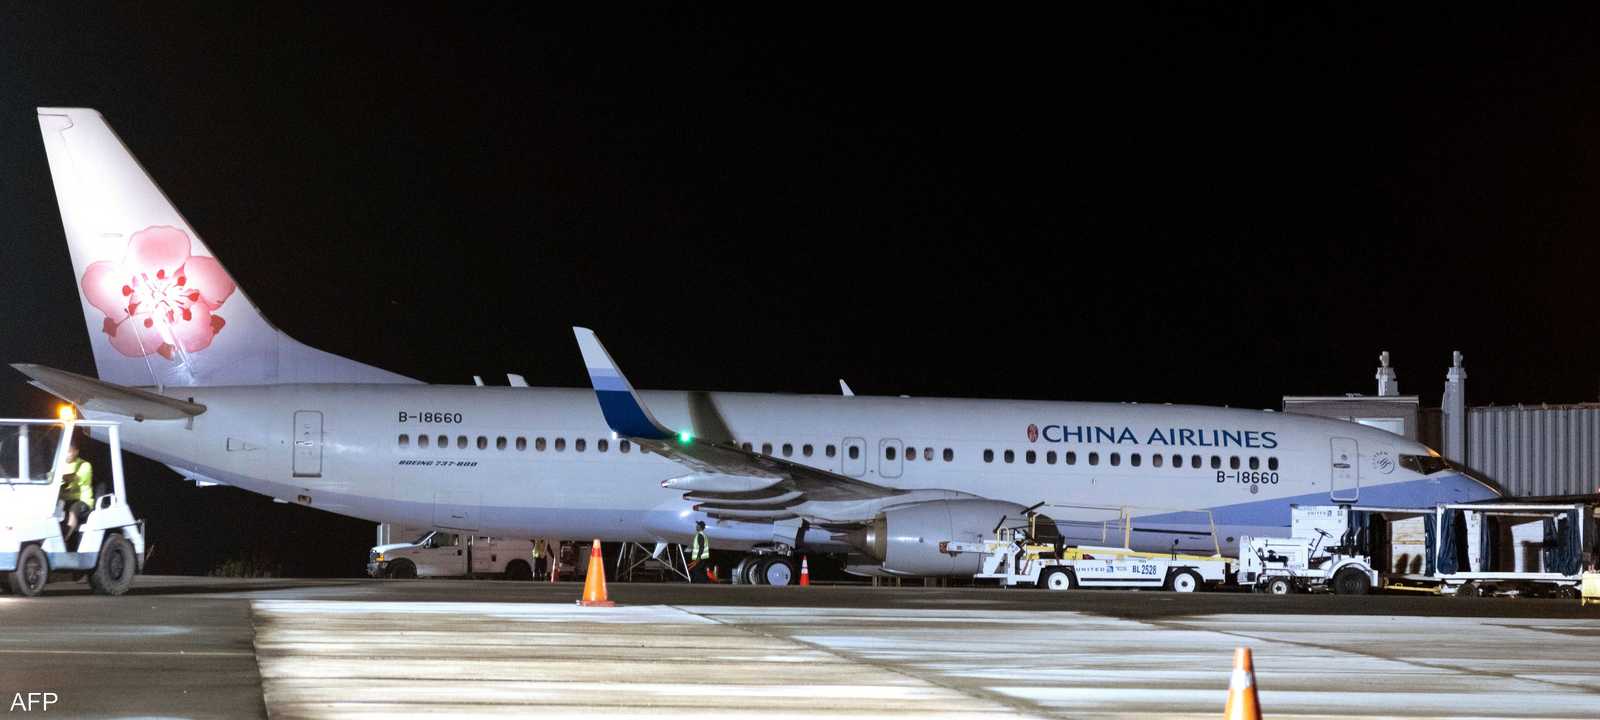 طائرة بوينغ 737-800 التابعة للخطوط الجوية الصينية